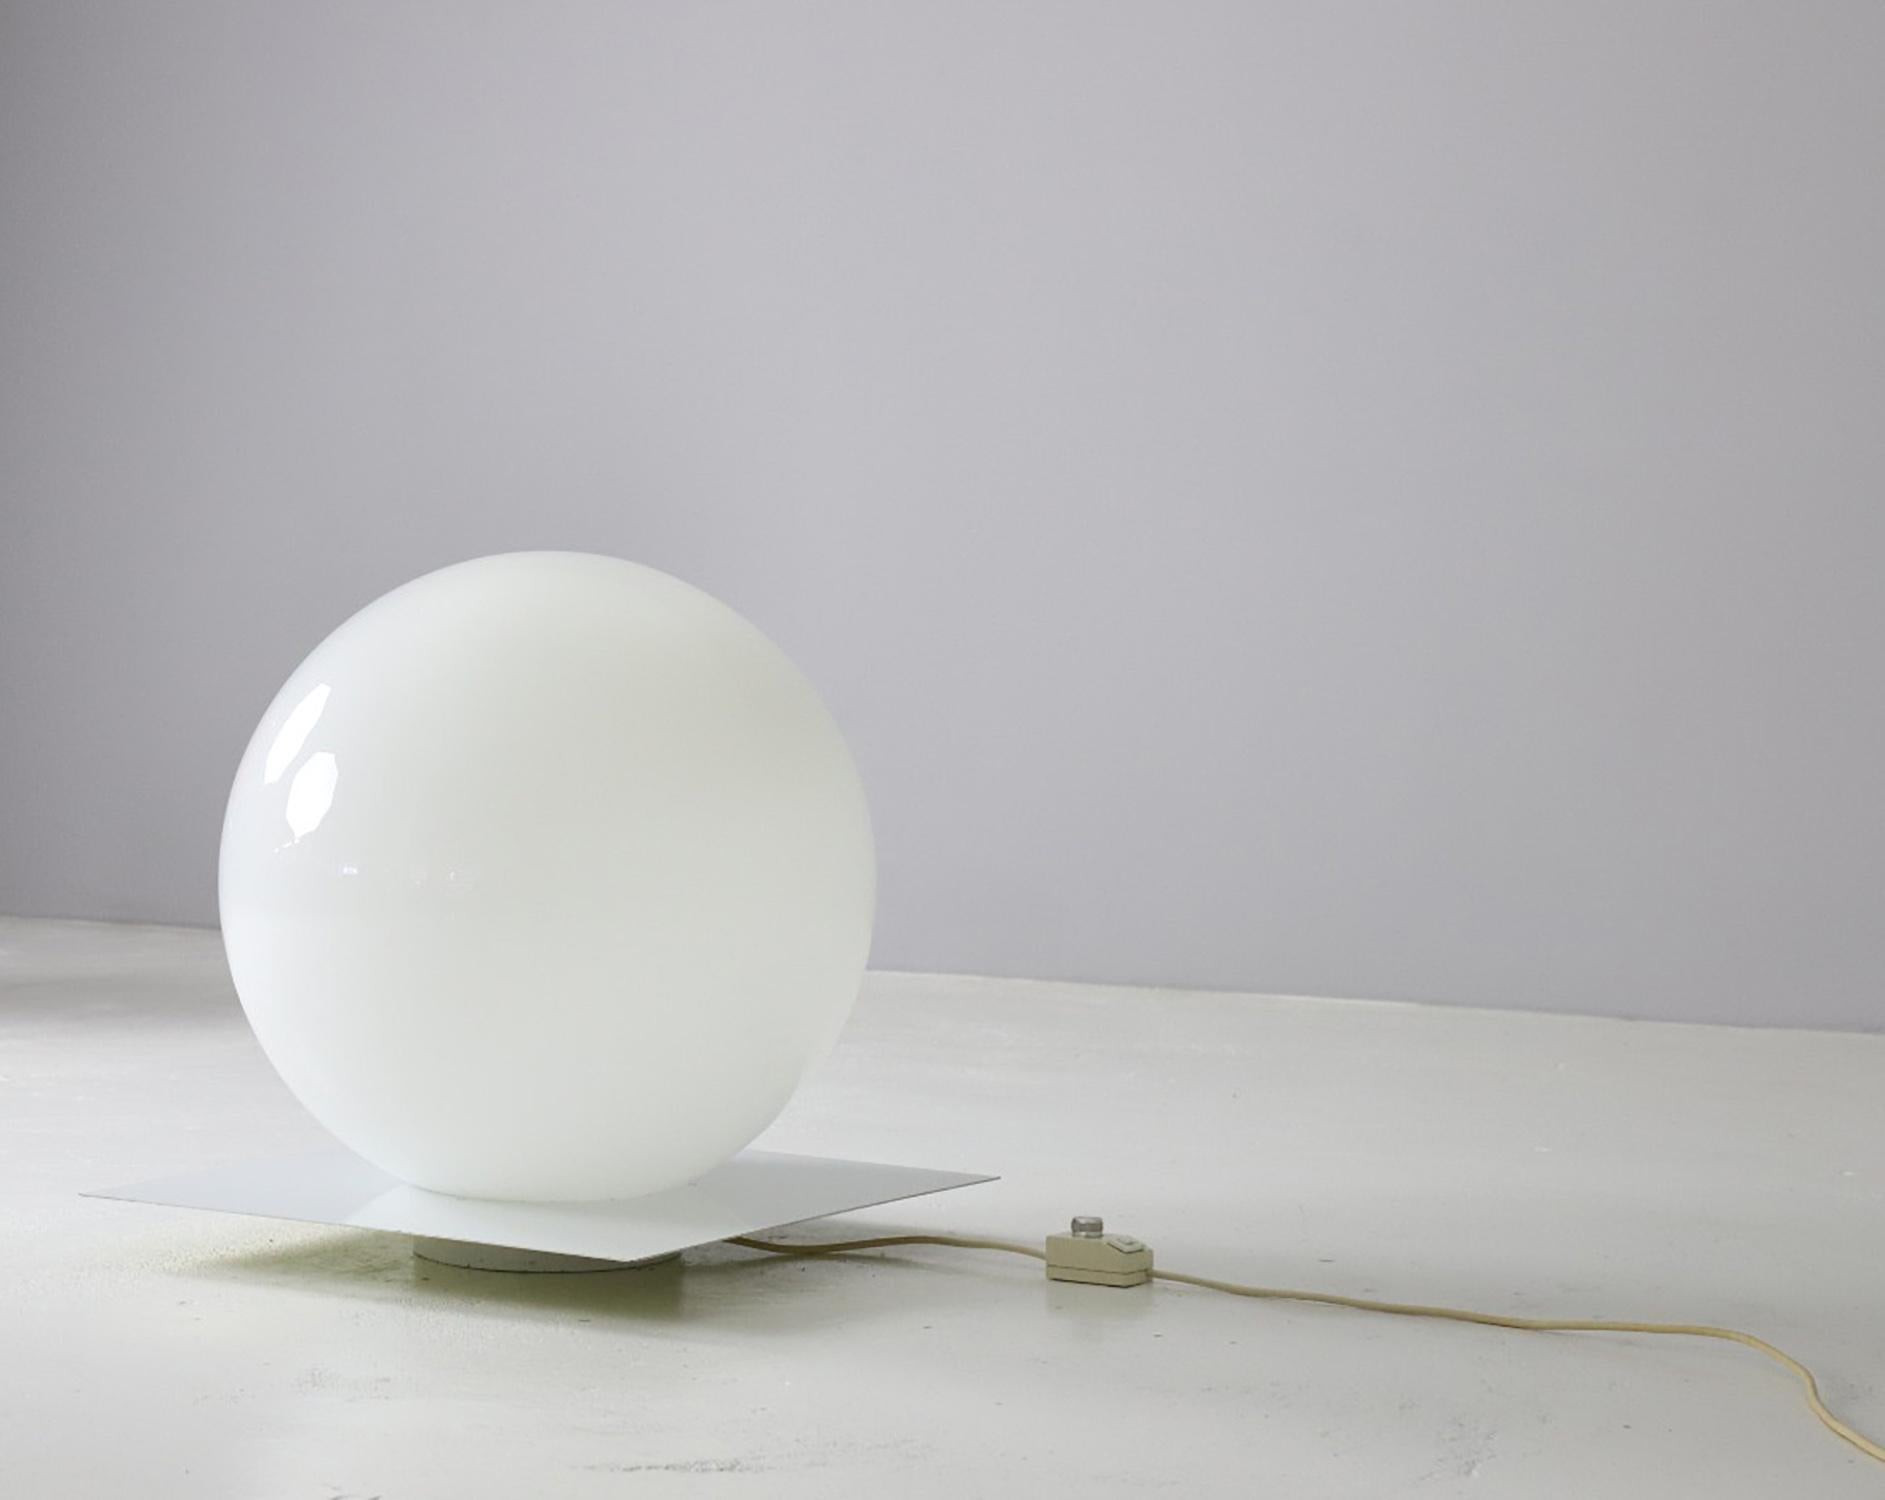 La lampe Micol a été conçue par Sergio Mazza et Giuliana Gramigna pour Quattriflolio, Italie, en 1971. Elle se compose d'un abat-jour en verre de Murano soufflé à la main, soutenu par une plaque grillée en métal blanc. La version de la lampe Micol